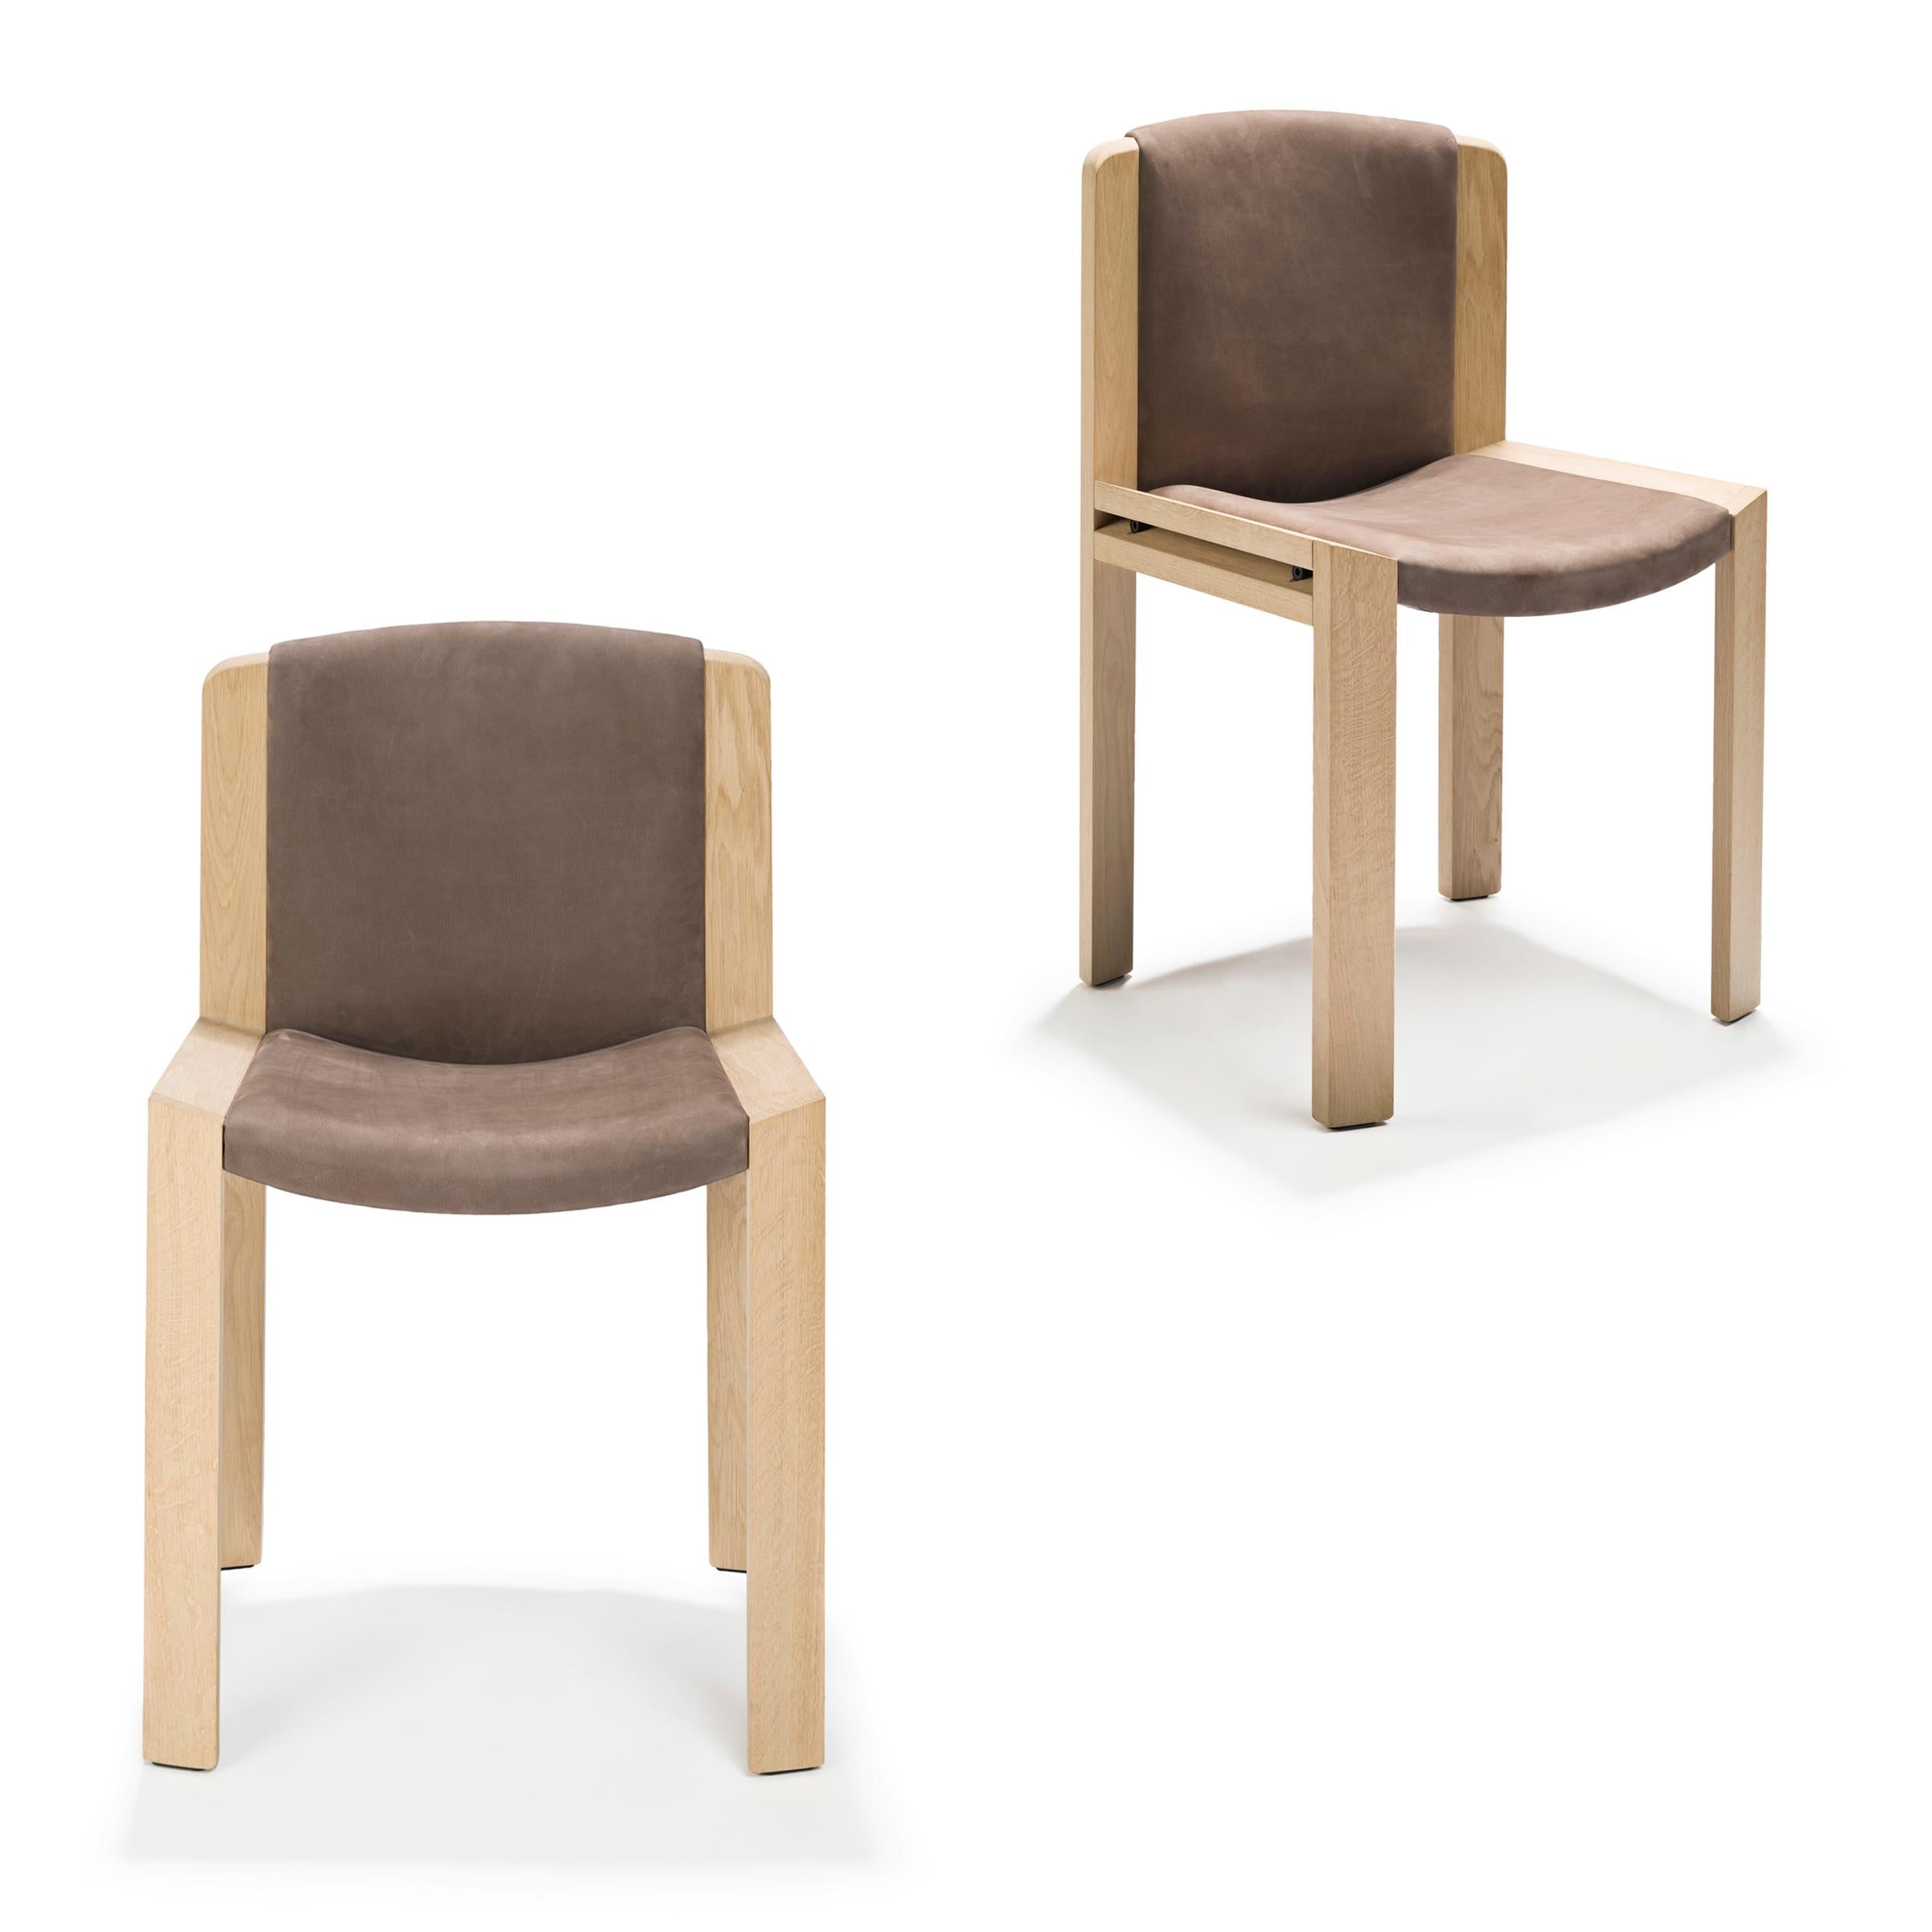 Stuhl, entworfen von Joe Colombo im Jahr 1965. 

Der von dem zukunftsorientierten italienischen Designer Joe Colombo entworfene Stuhl 300 ist ein schönes Beispiel für sein funktionales Designverständnis. Sitz und Rückenlehne sind gepolstert und